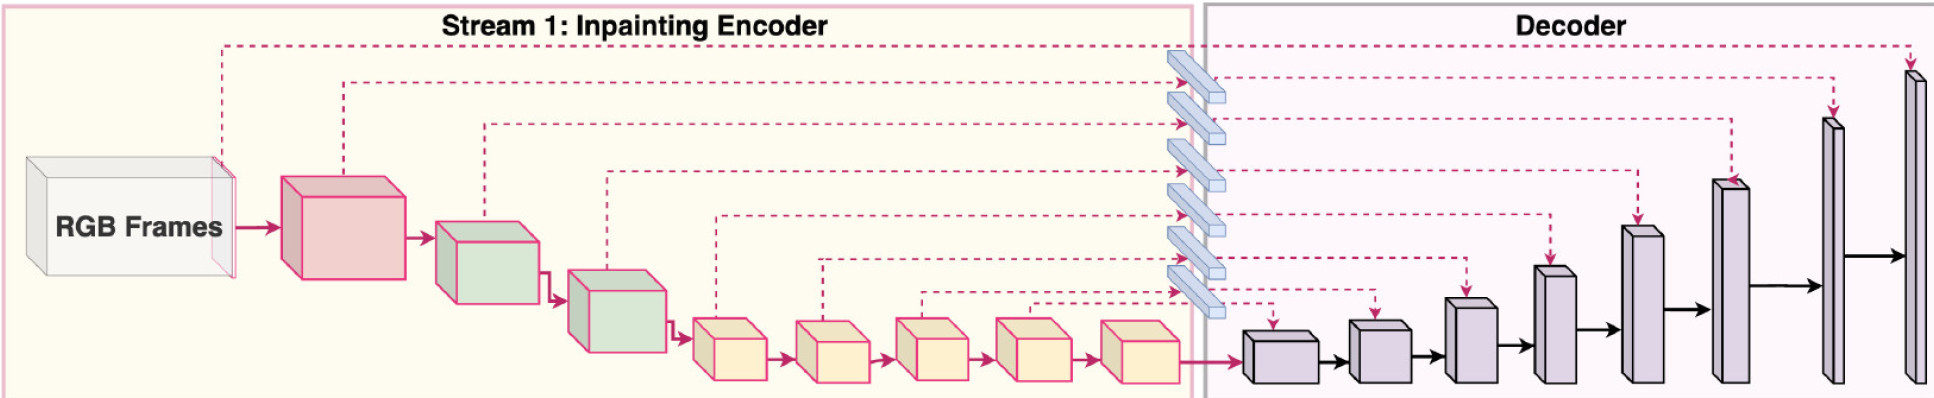 encoder-decoder architecture